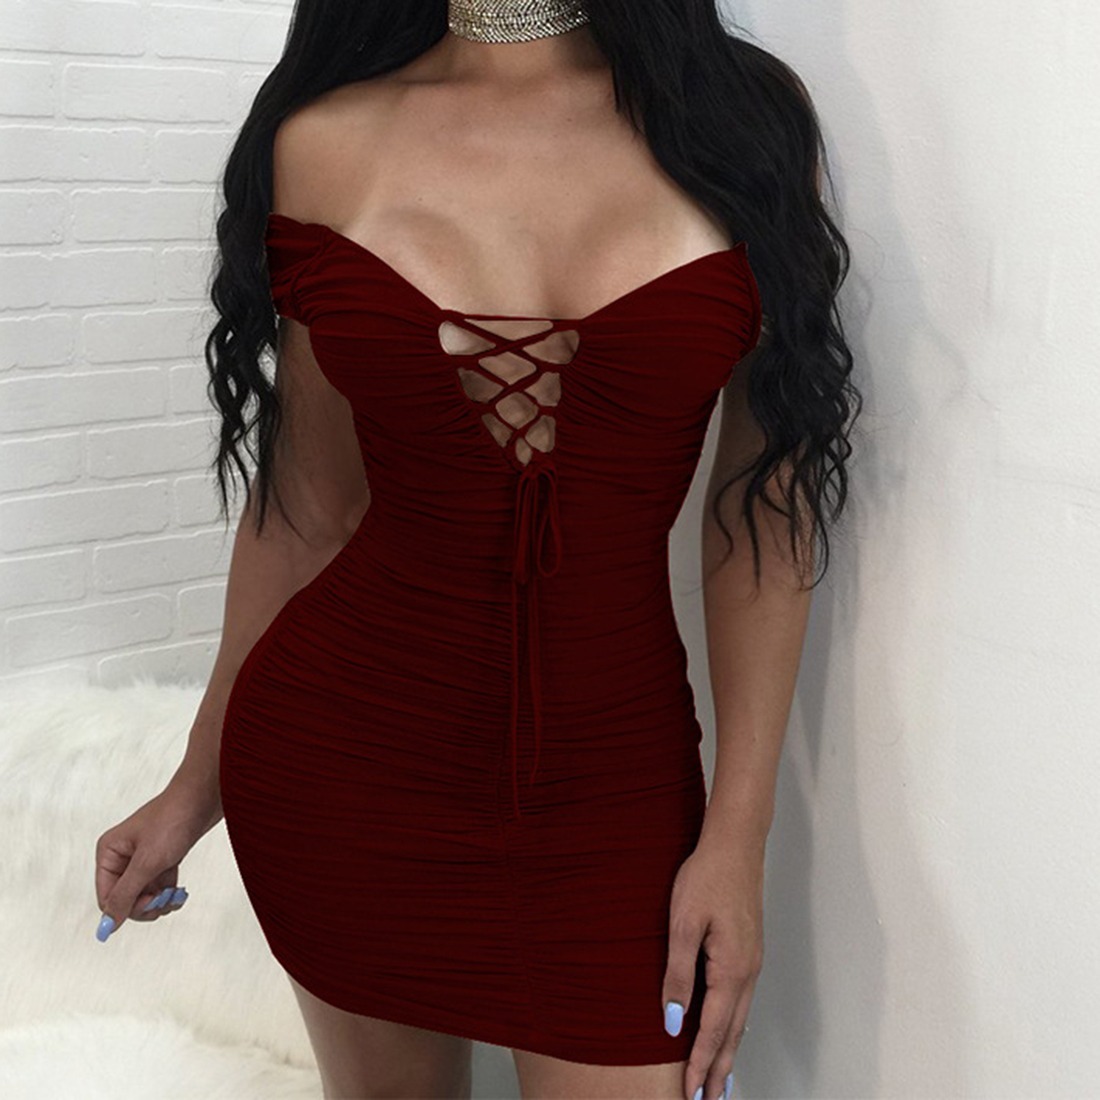 Vestidos Cortos Slim Sexy Moda 2019 Envio Gratis 79900 En Mercado 